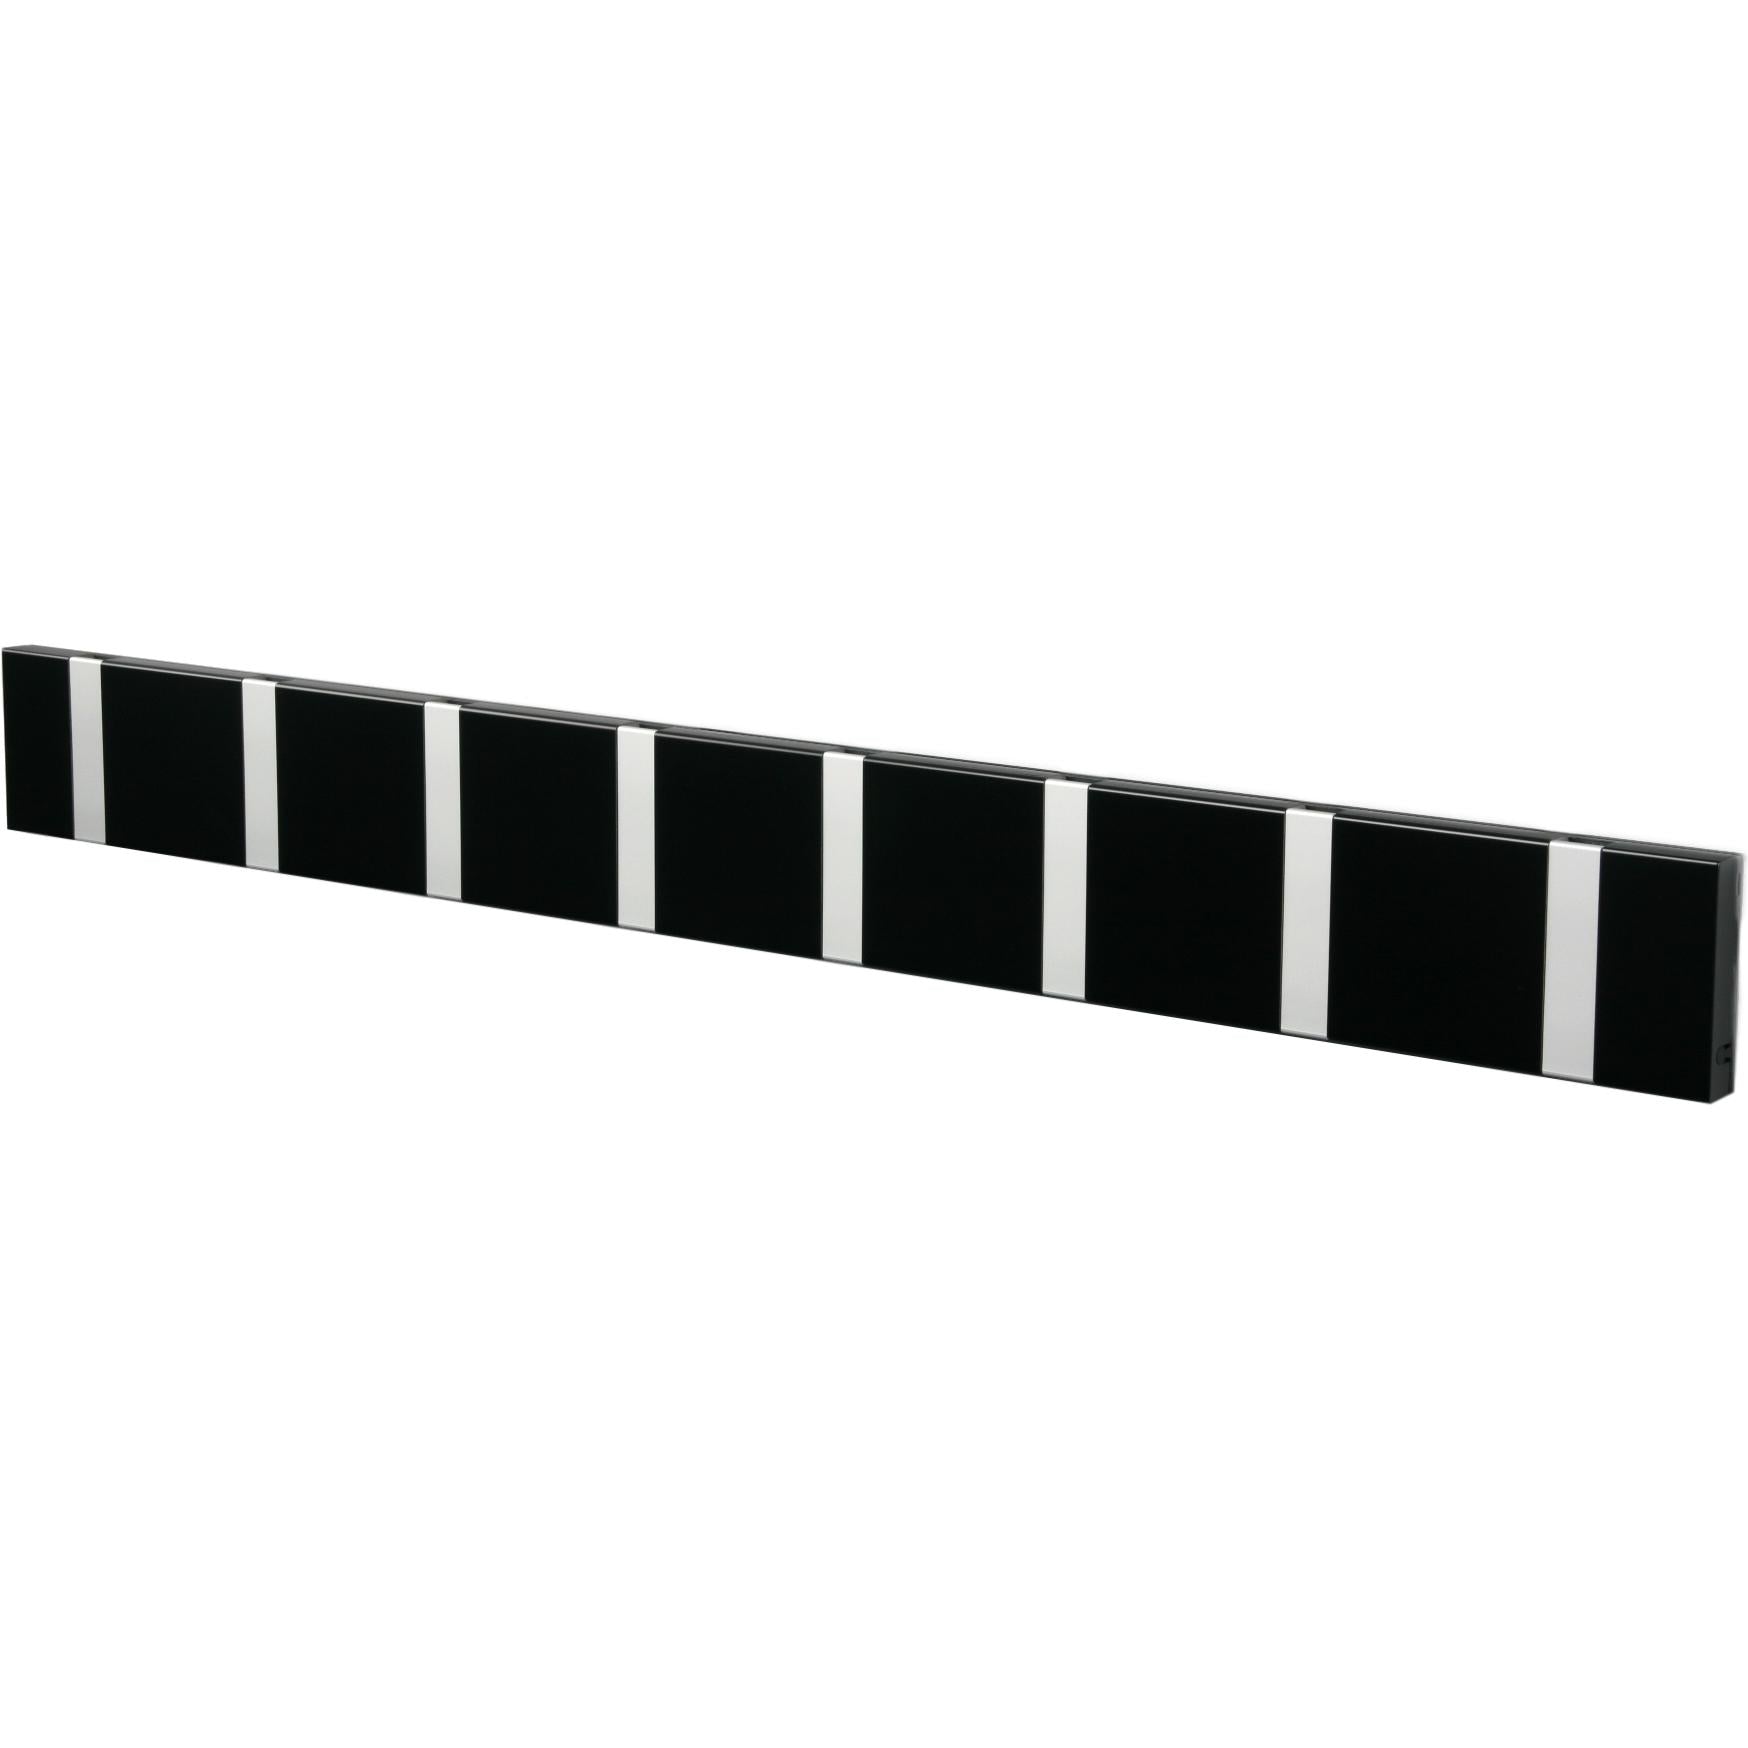 Loca Knax horizontale laagrek 8 haken, zwart/grijs